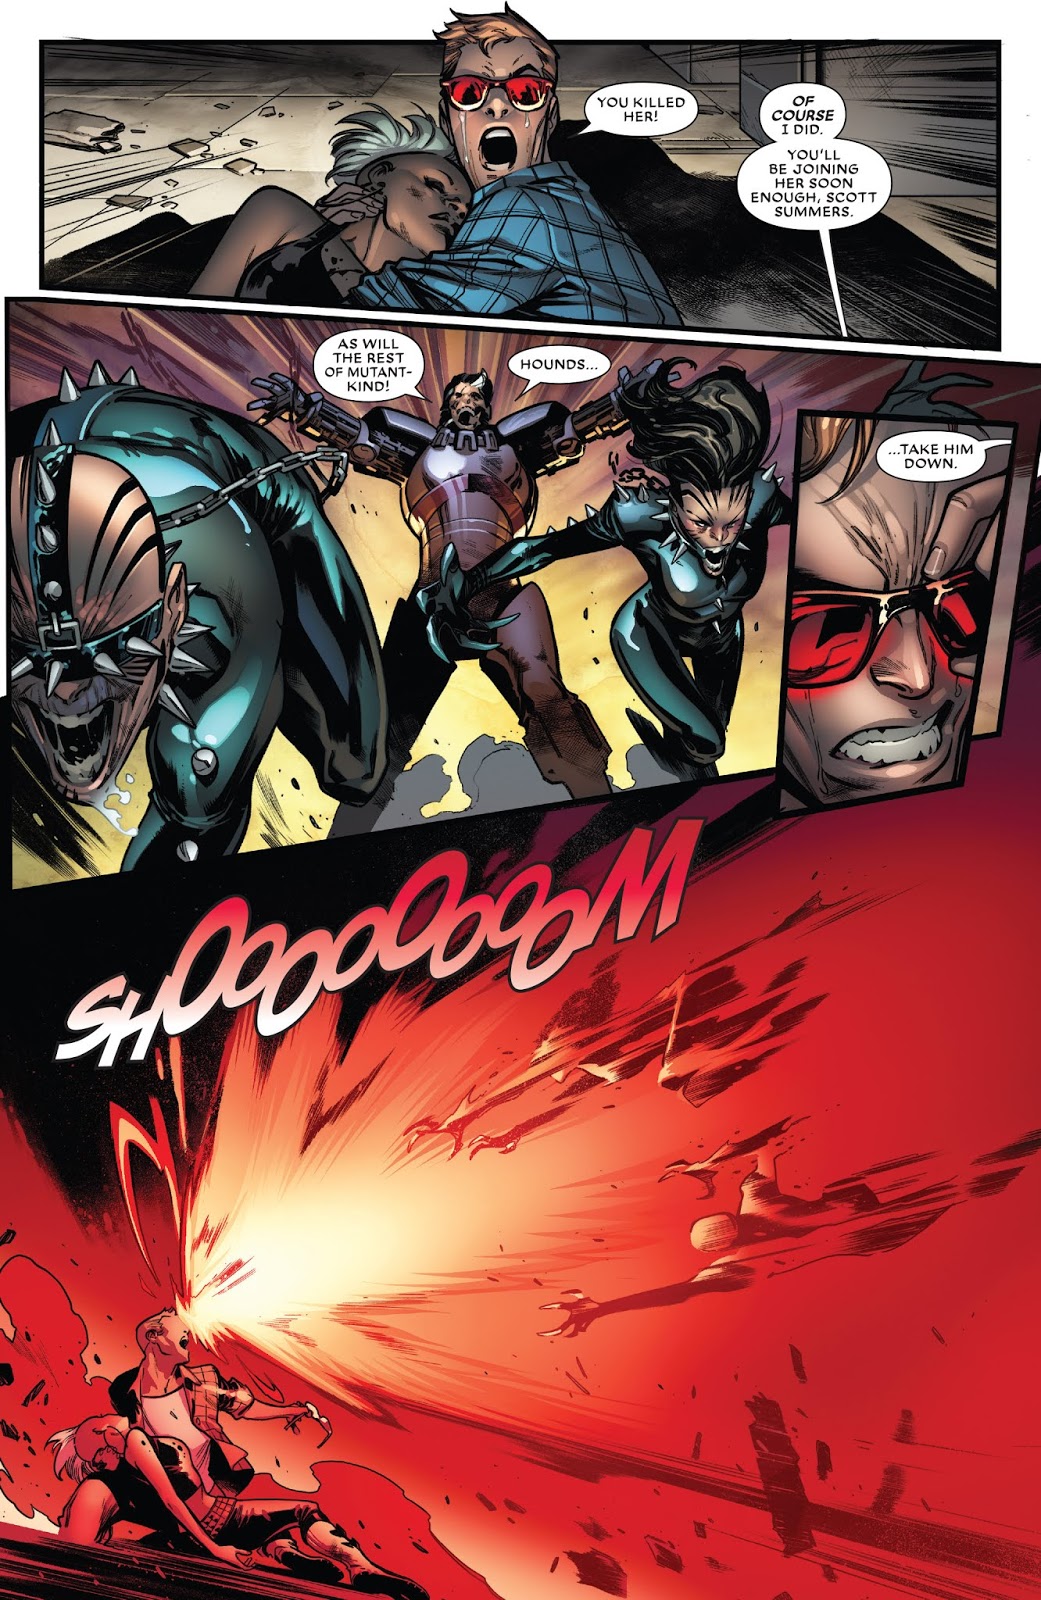 X-Men: Extermination Picture